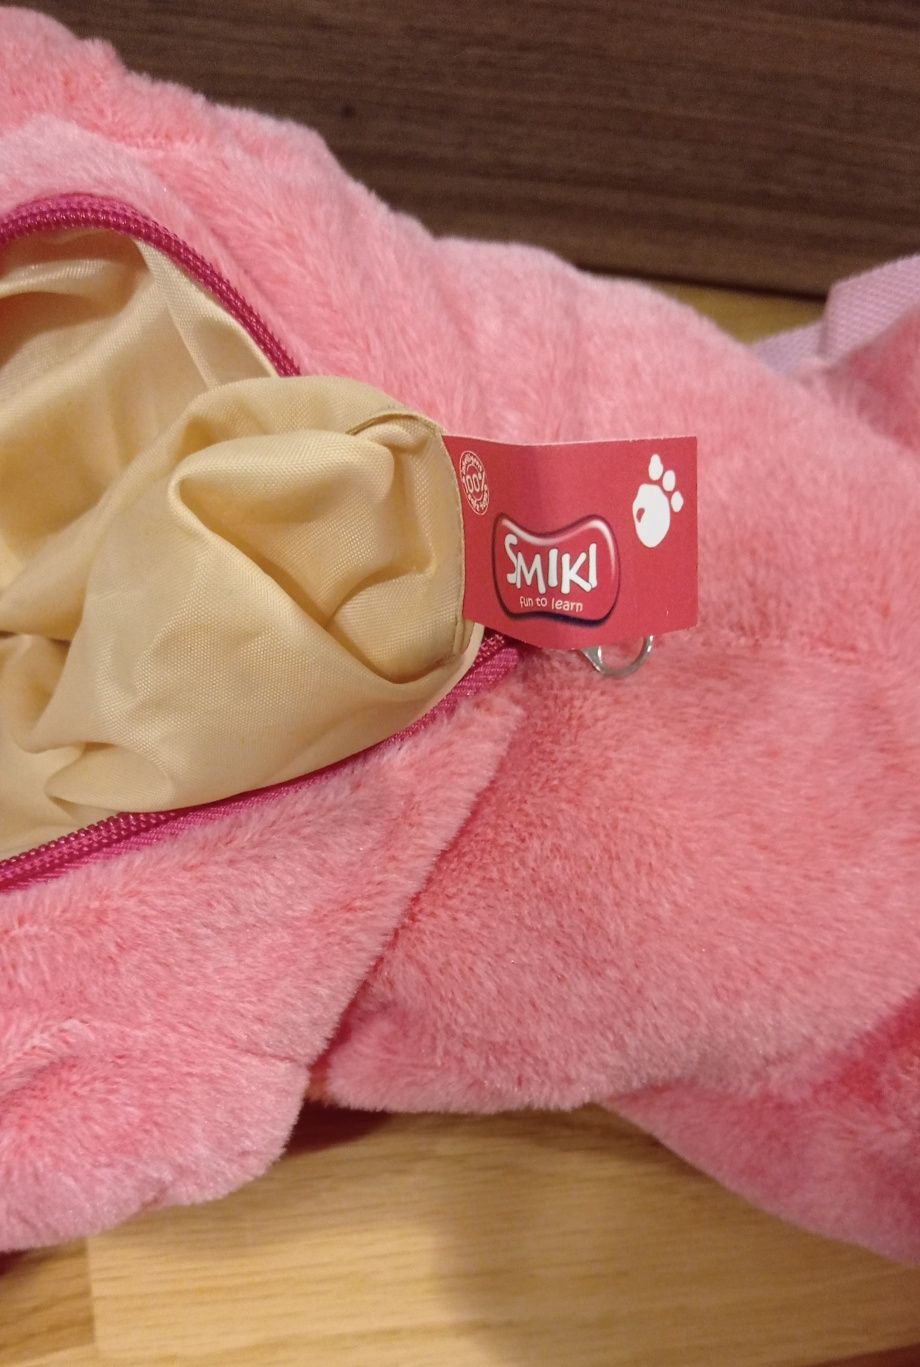 Smiki różowy plecak jednorożec, jak nowy